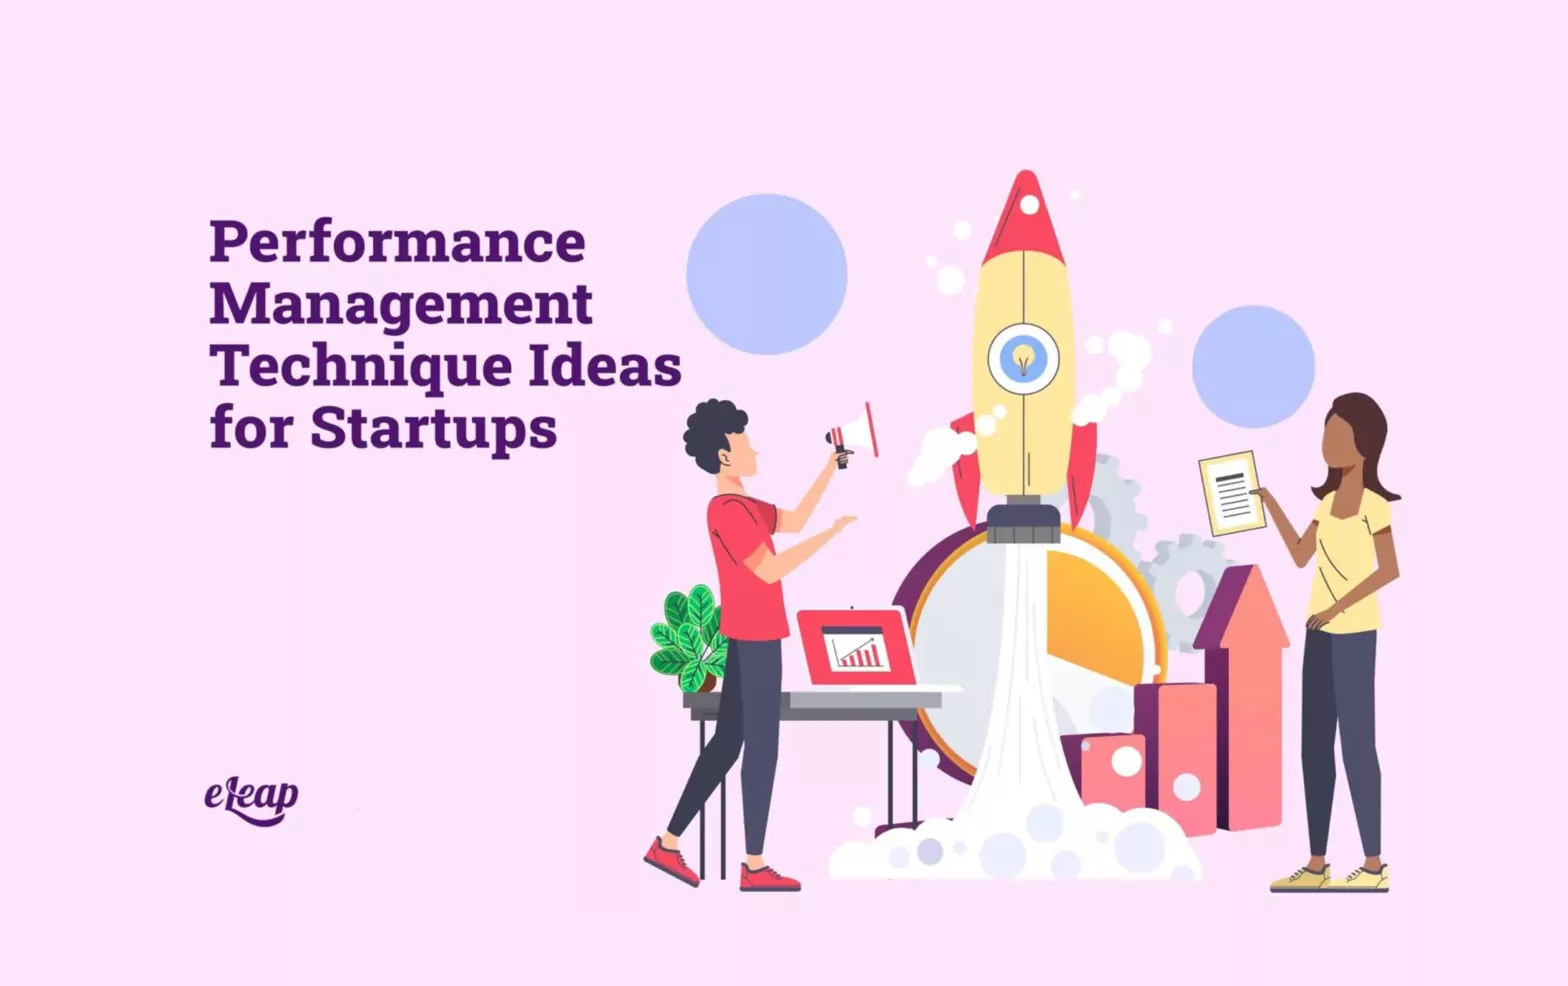 Performance Management Technique Ideas for Startups